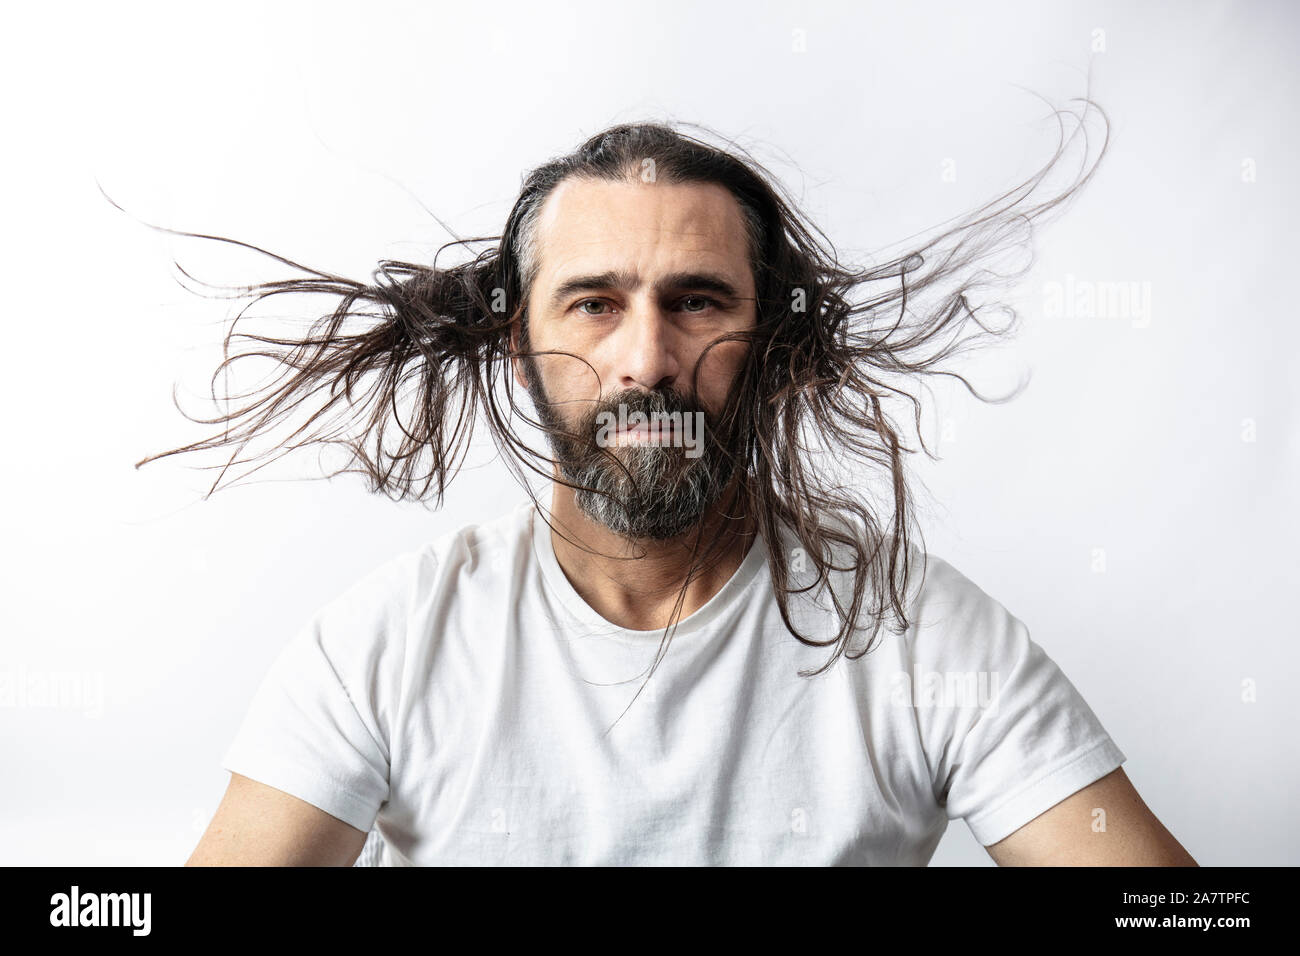 Retrato de un hombre caucásico aleteo con la barba y el cabello largo. Expresión serena y mire a la cámara. Foto de stock